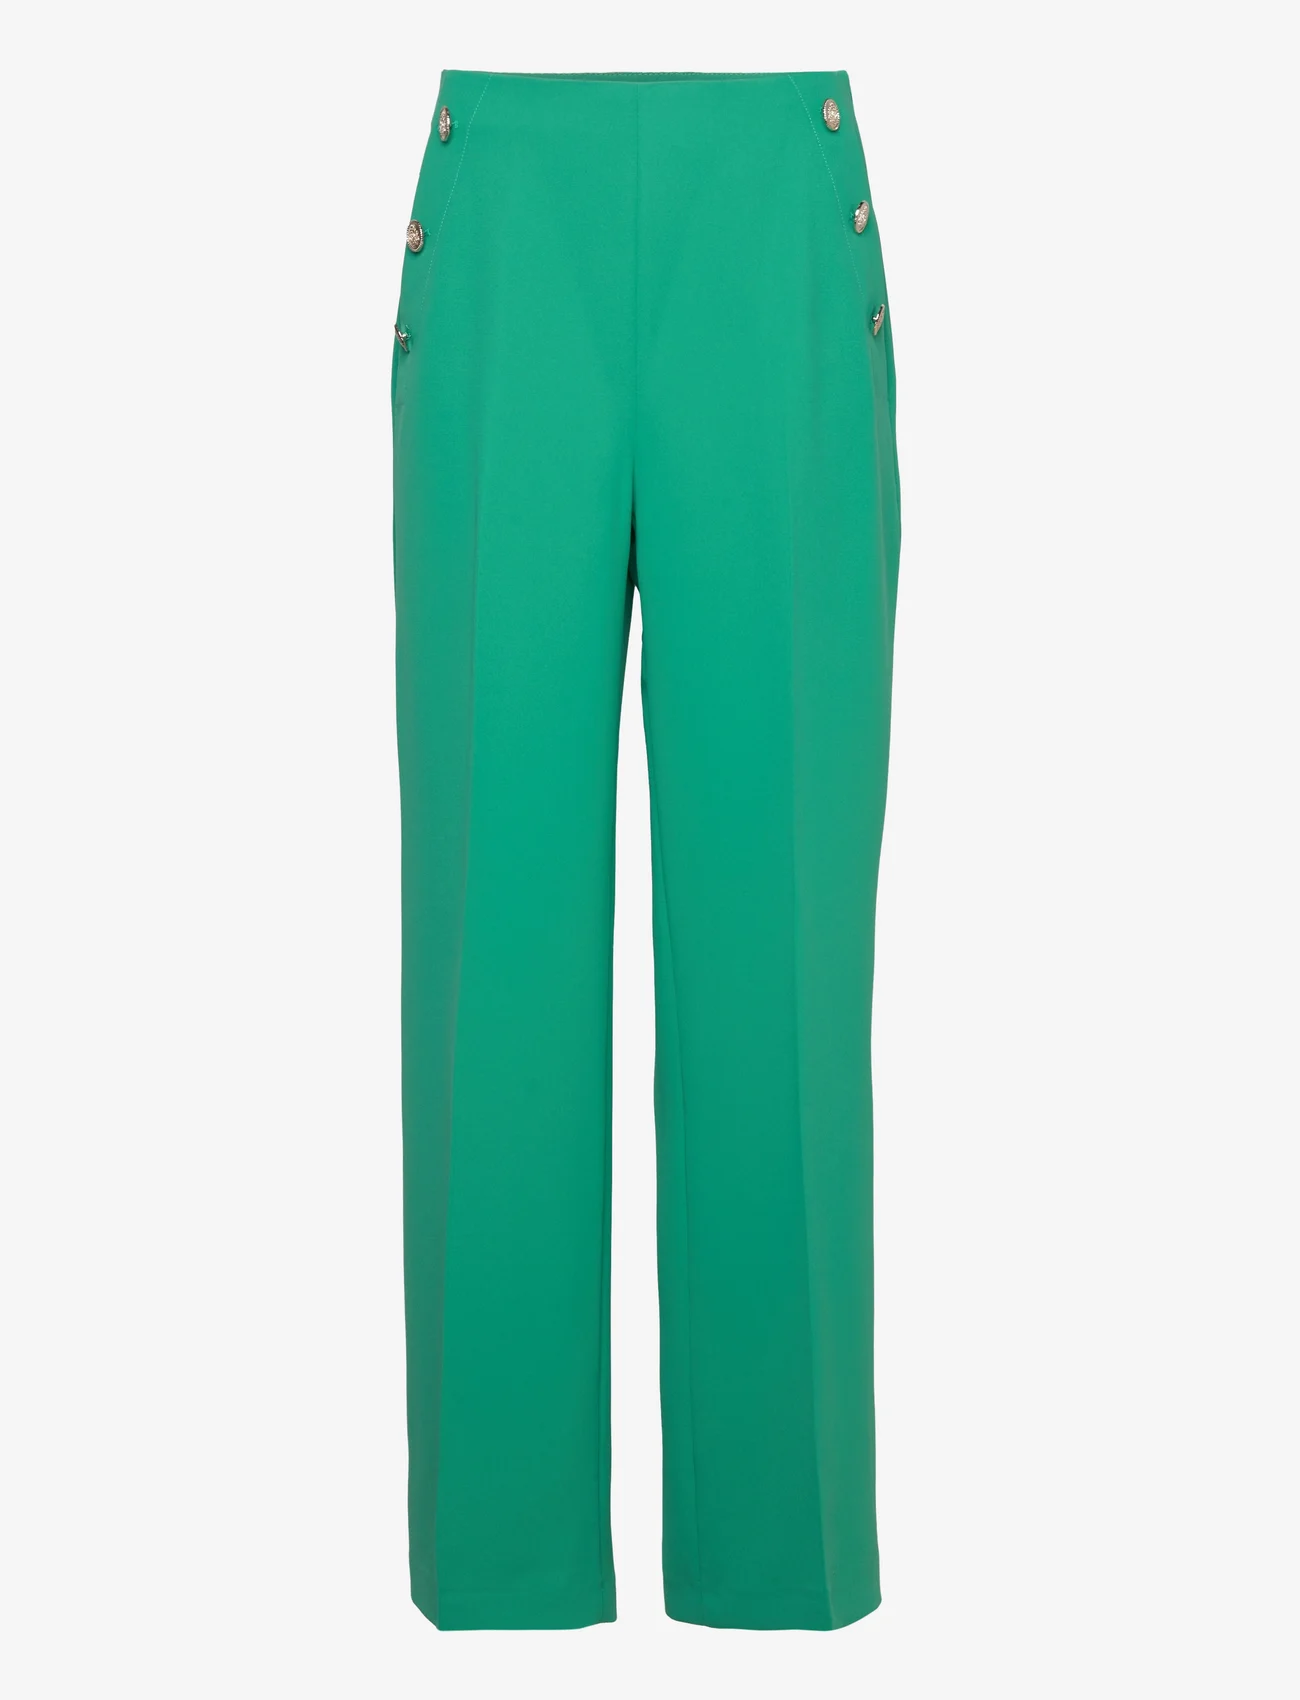 Ted Baker London - LLAYLAT - bukser med brede ben - 34 green - 0